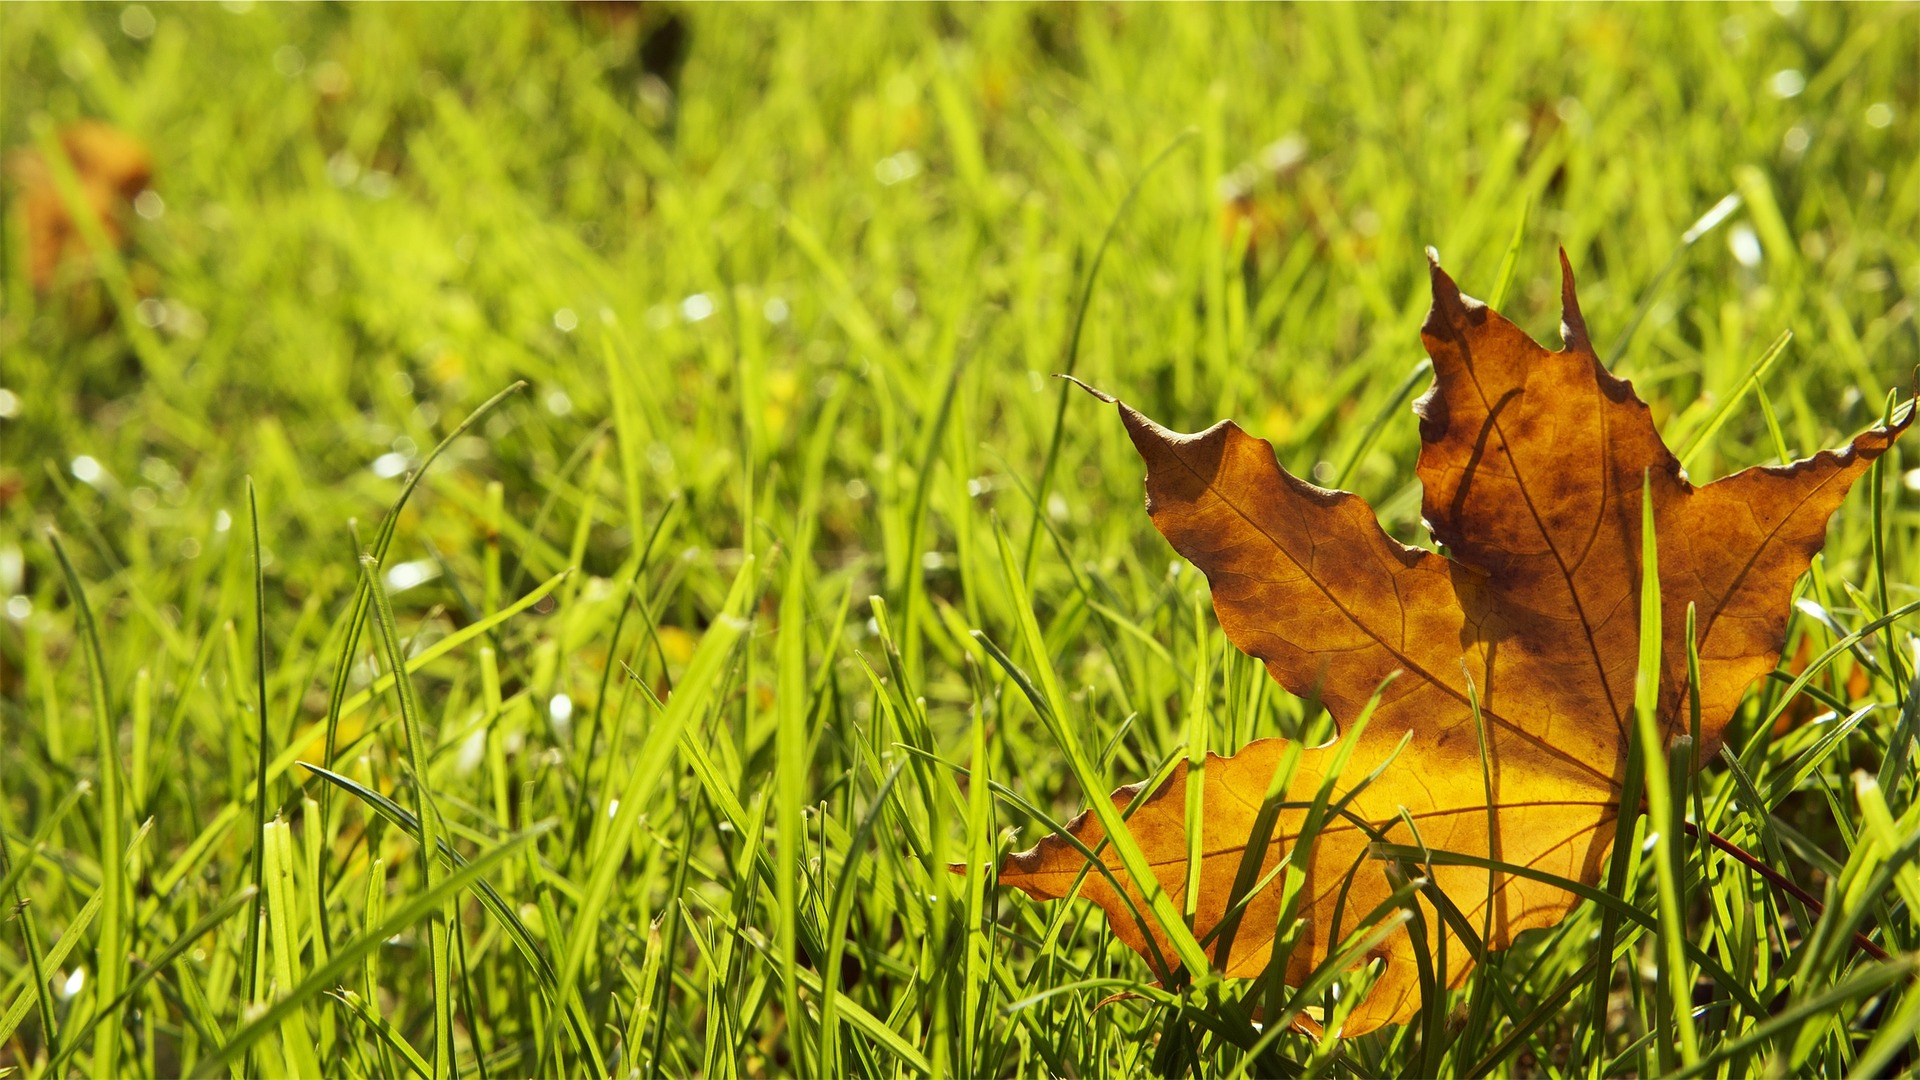 Autumn leaf on lawn